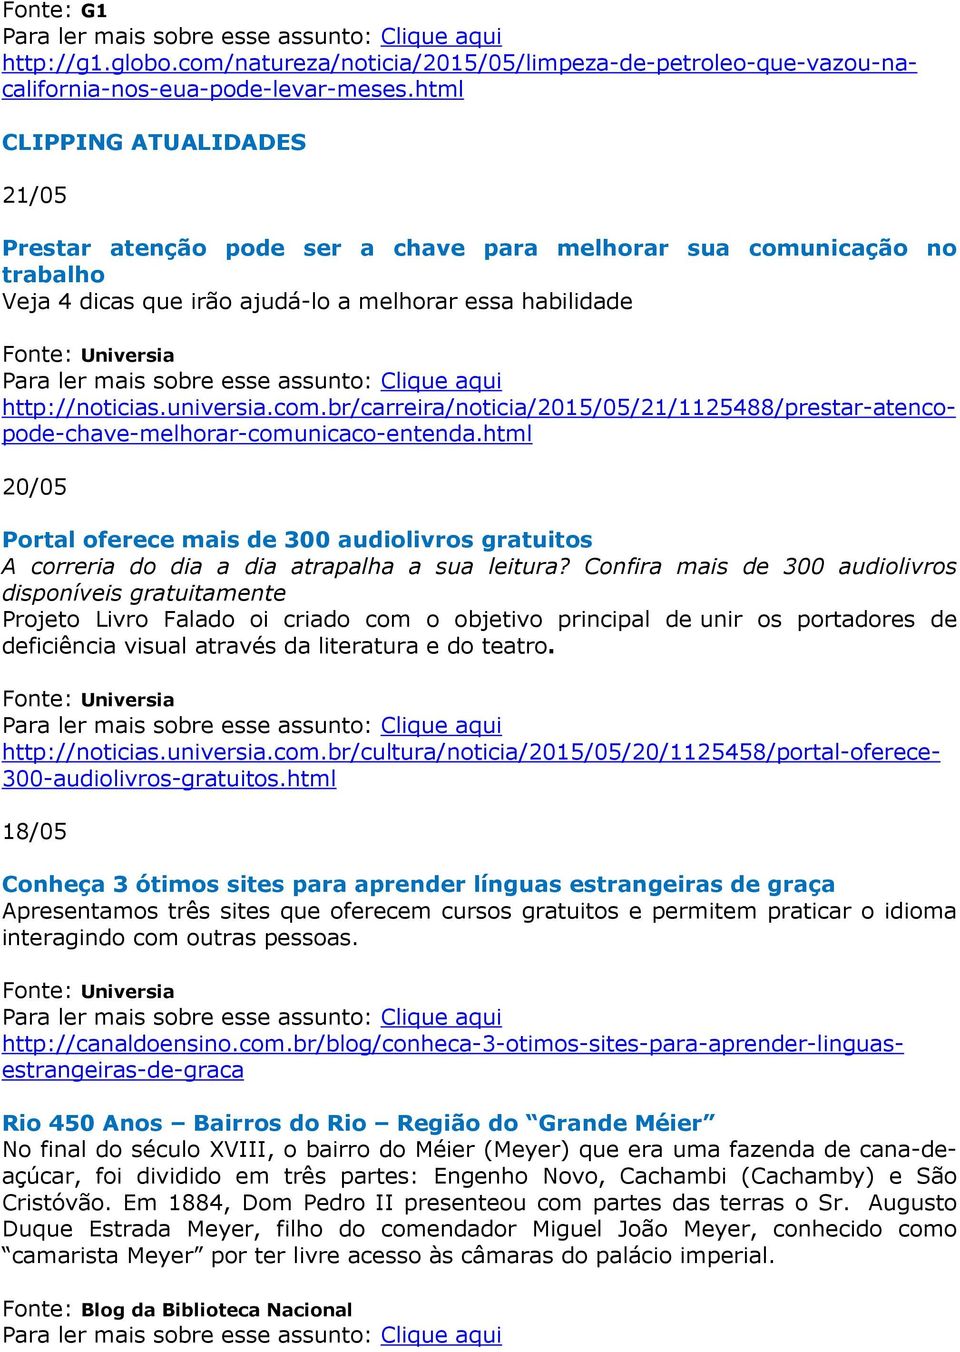 universia.com.br/carreira/noticia/2015/05/21/1125488/prestar-atencopode-chave-melhorar-comunicaco-entenda.